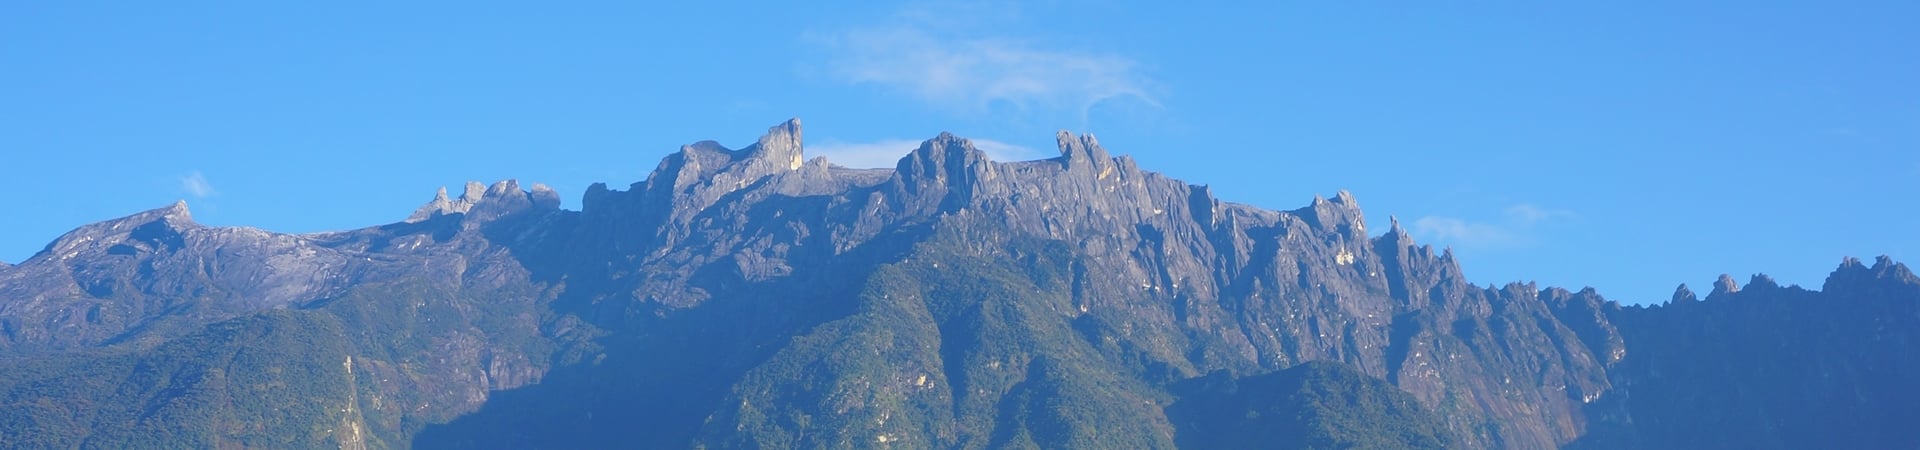 Mount Kinabalu Climb